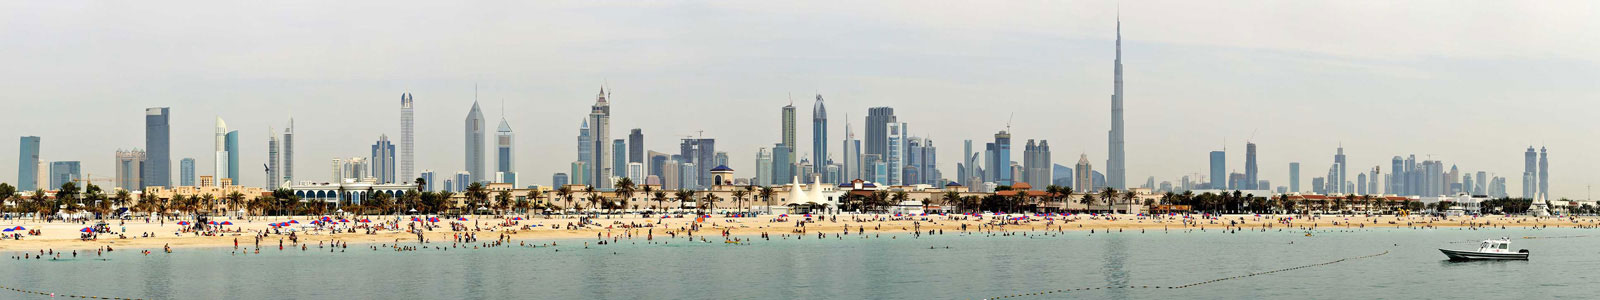 №4666 - Летний день на пляже в Дубае